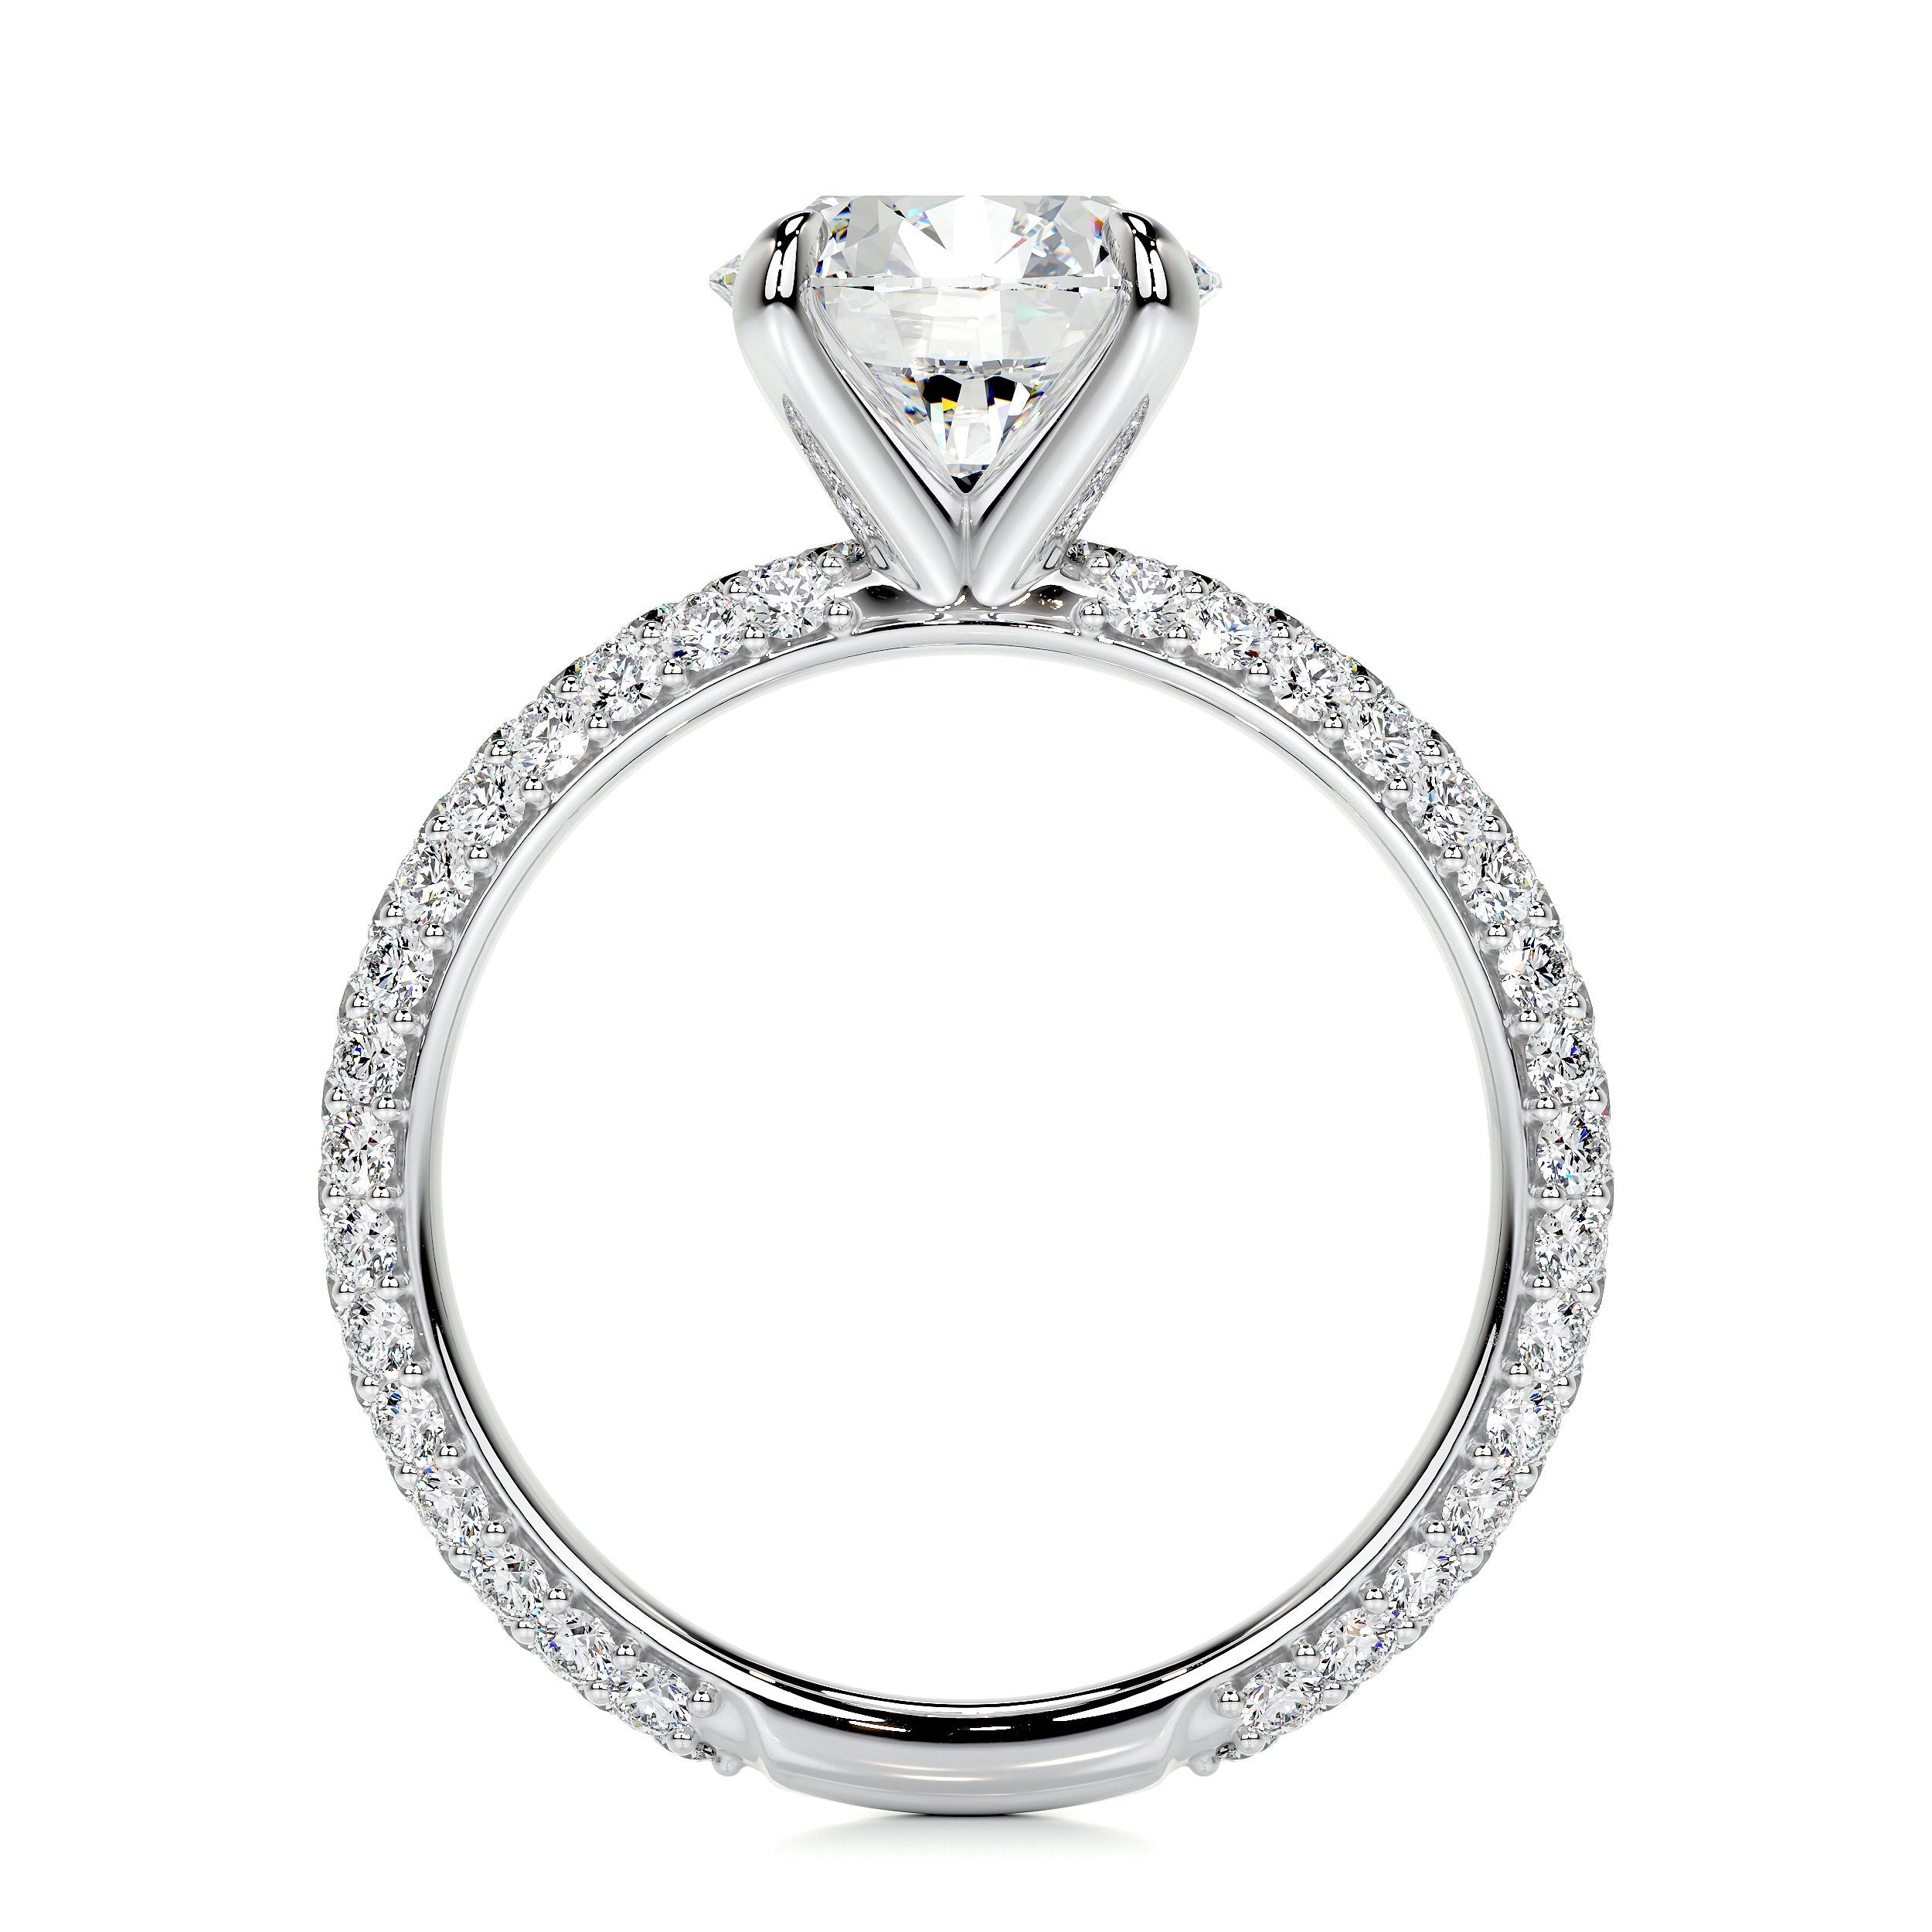 Charlotte Lab Grown Diamond Ring   (2.5 Carat) -14K White Gold